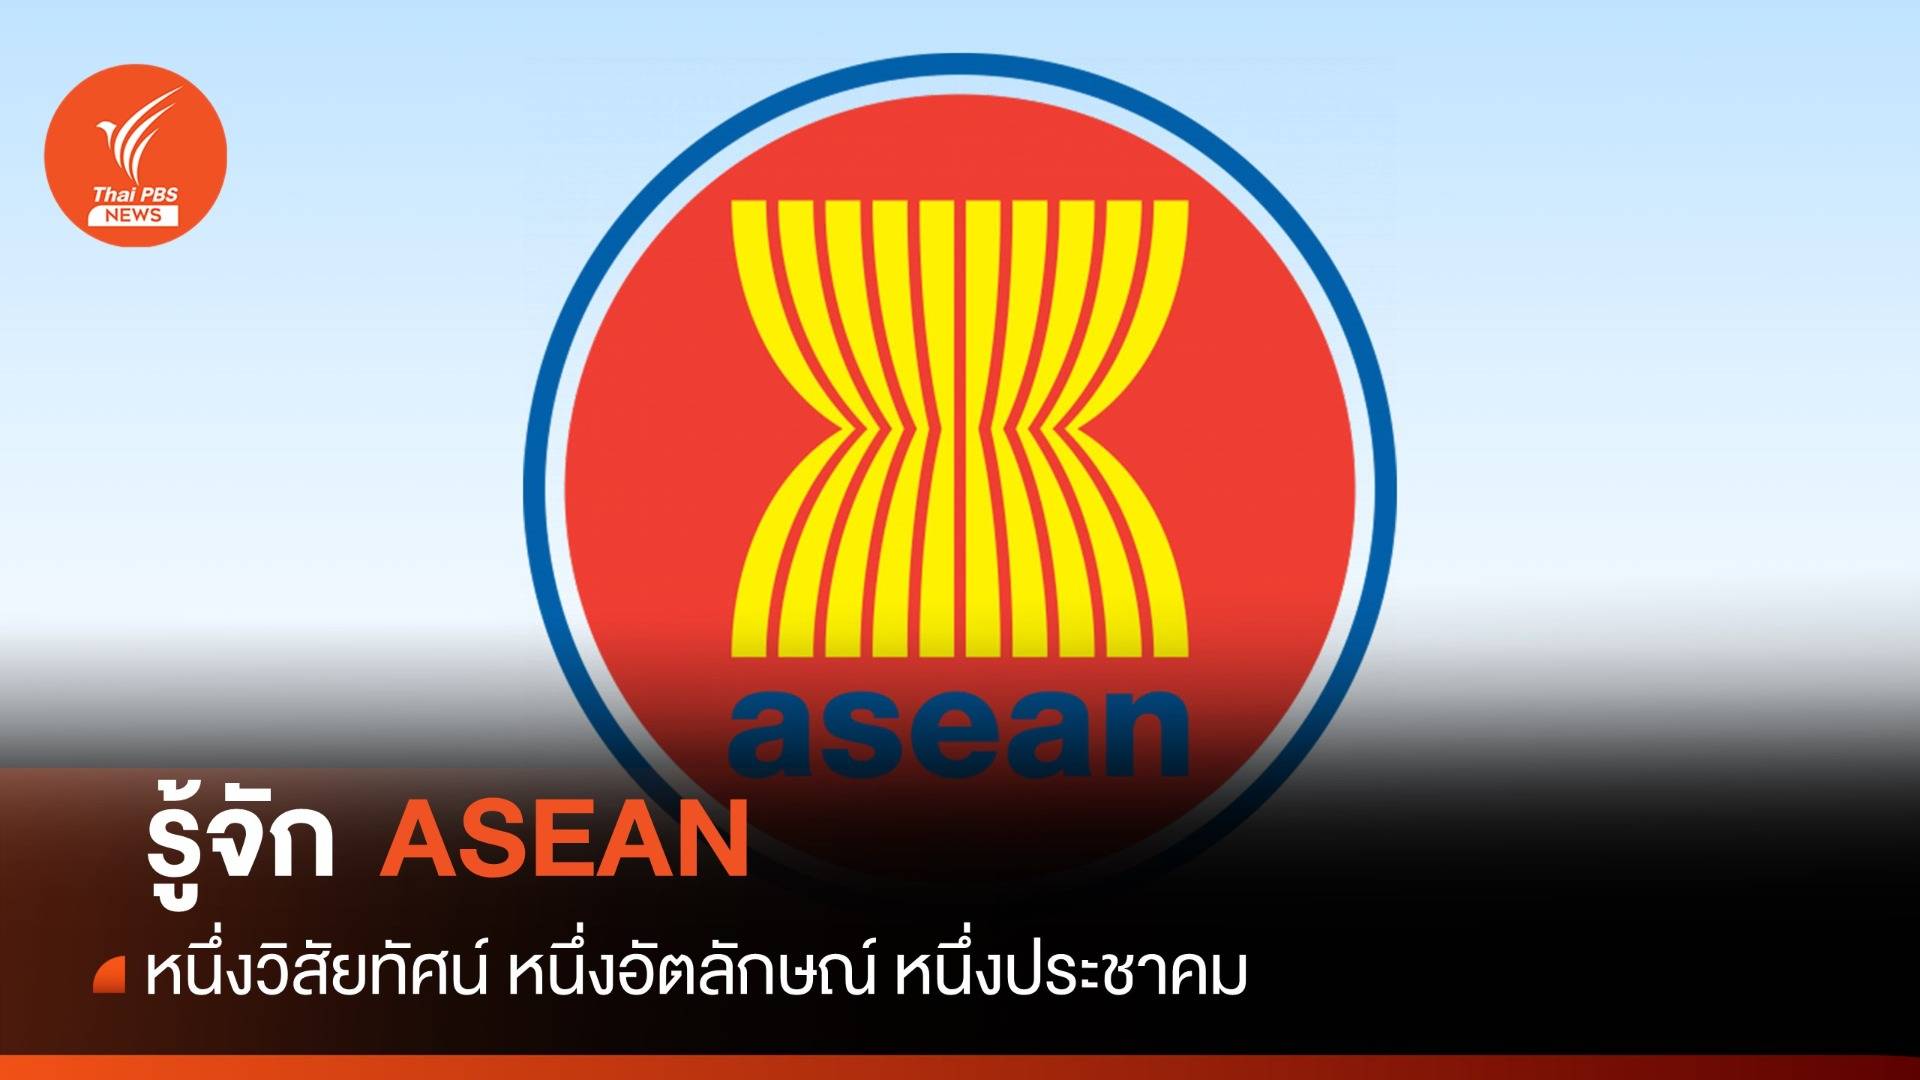 มารู้จัก ASEAN กันเถอะ 